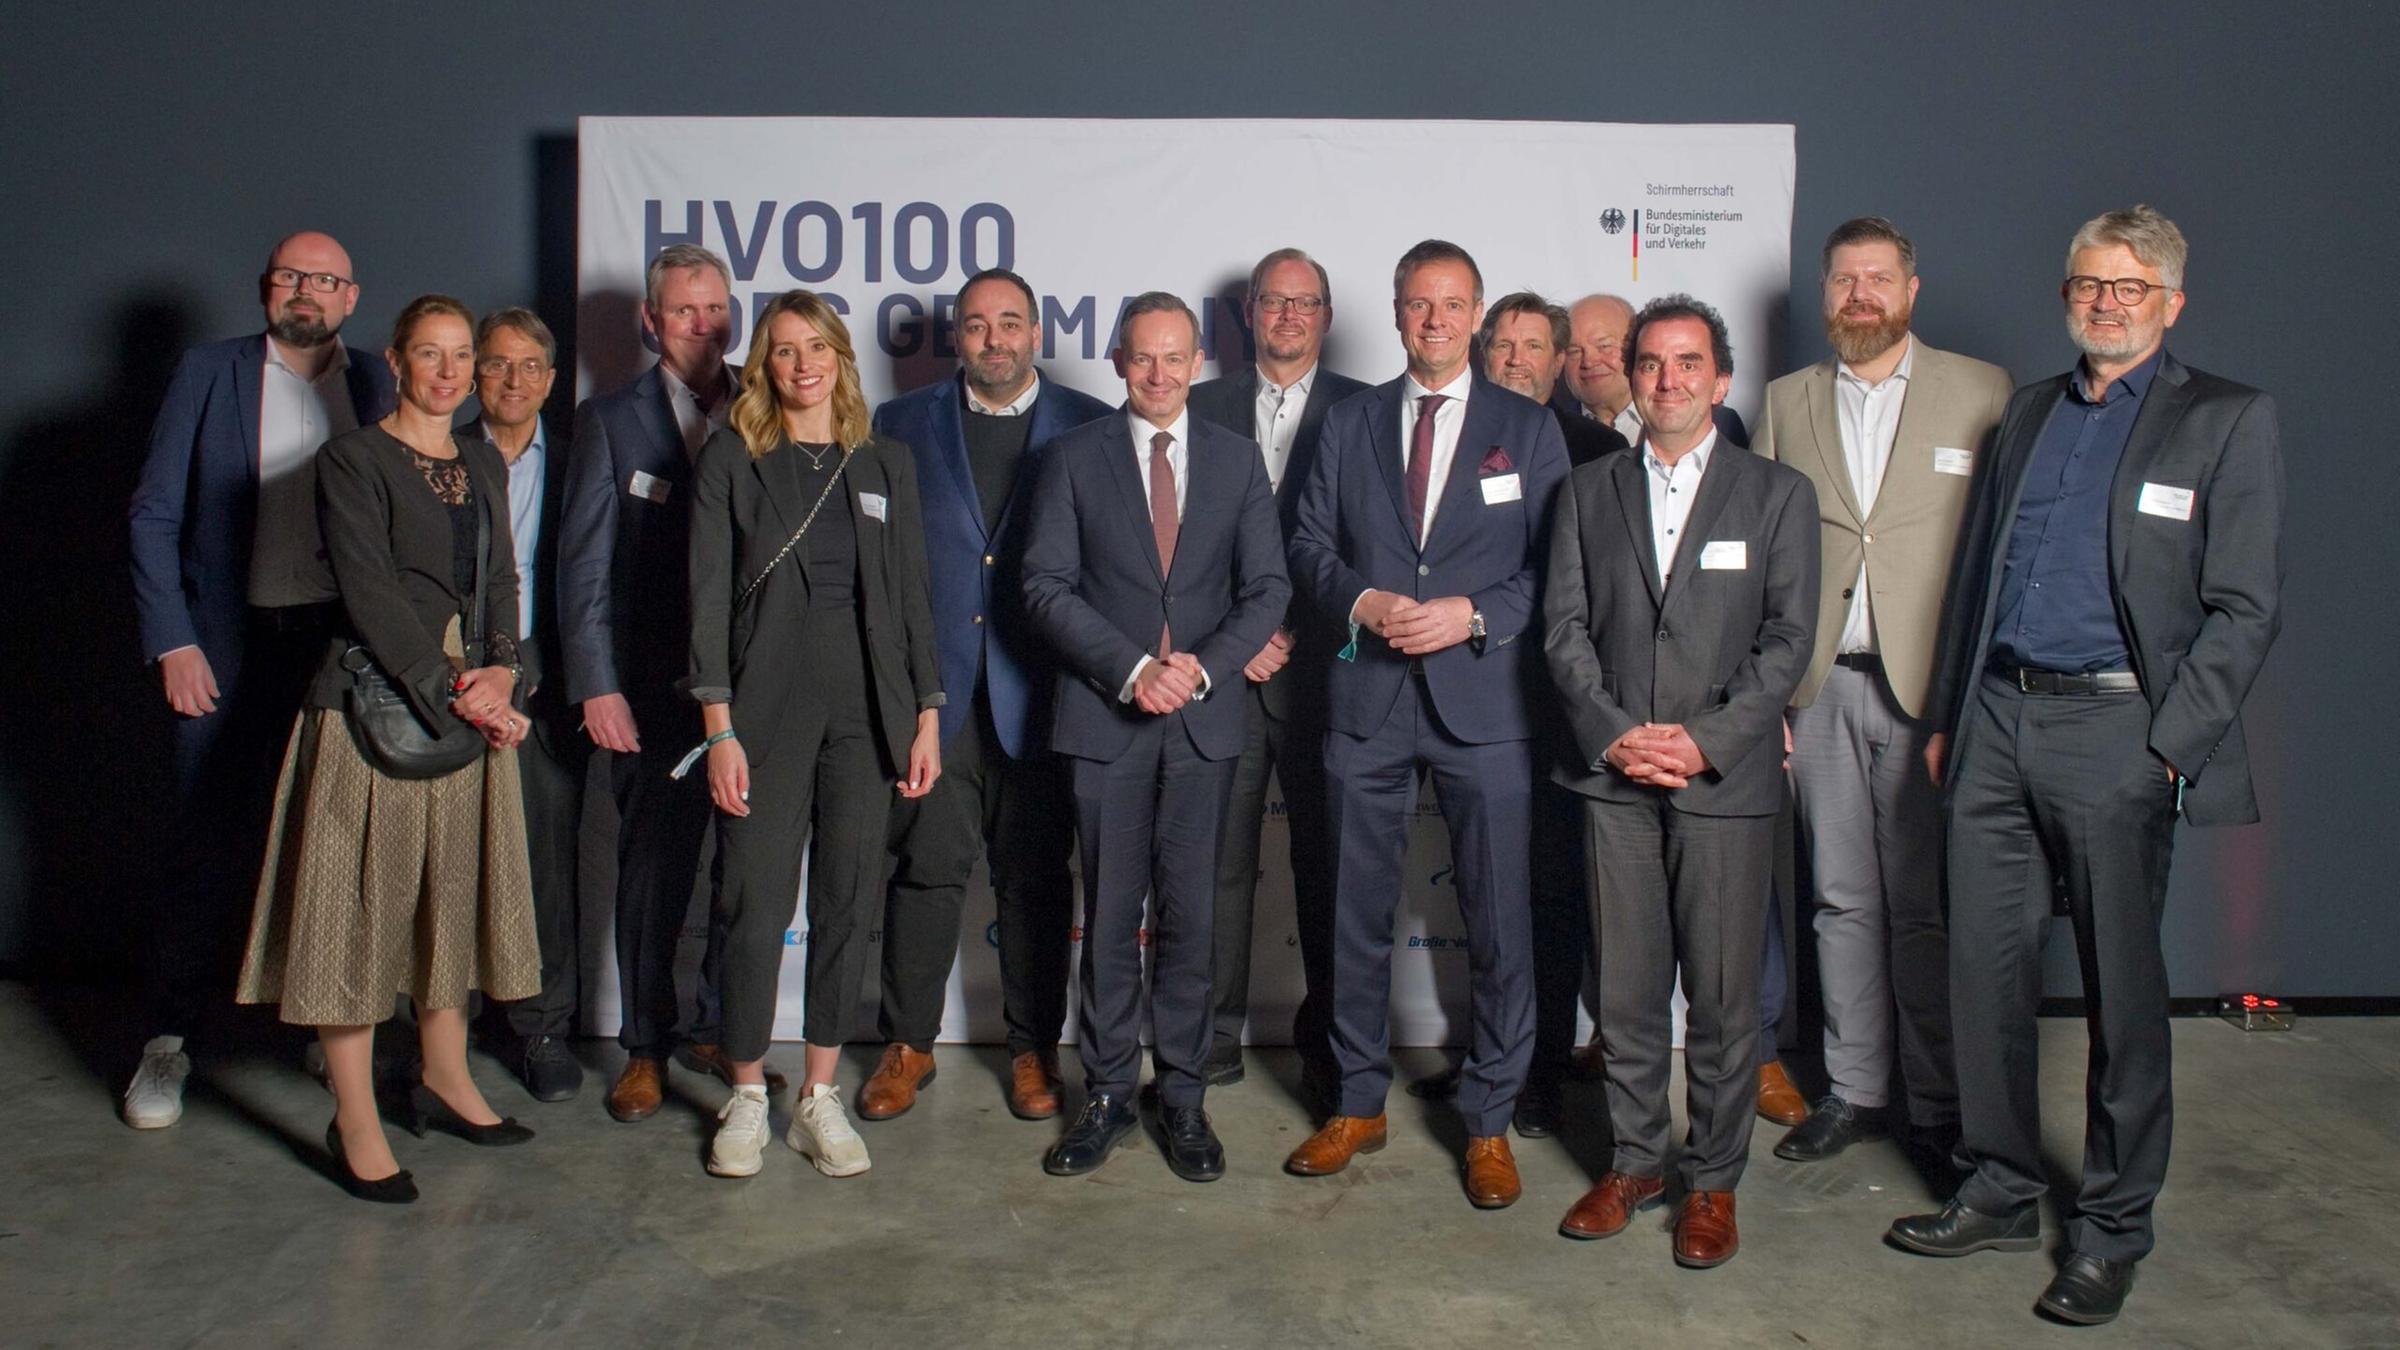 Gruppenfoto mit Minister Wissing und Unterstützern der Kampagne "HVO100 goes Germany" am 13. März 2024.